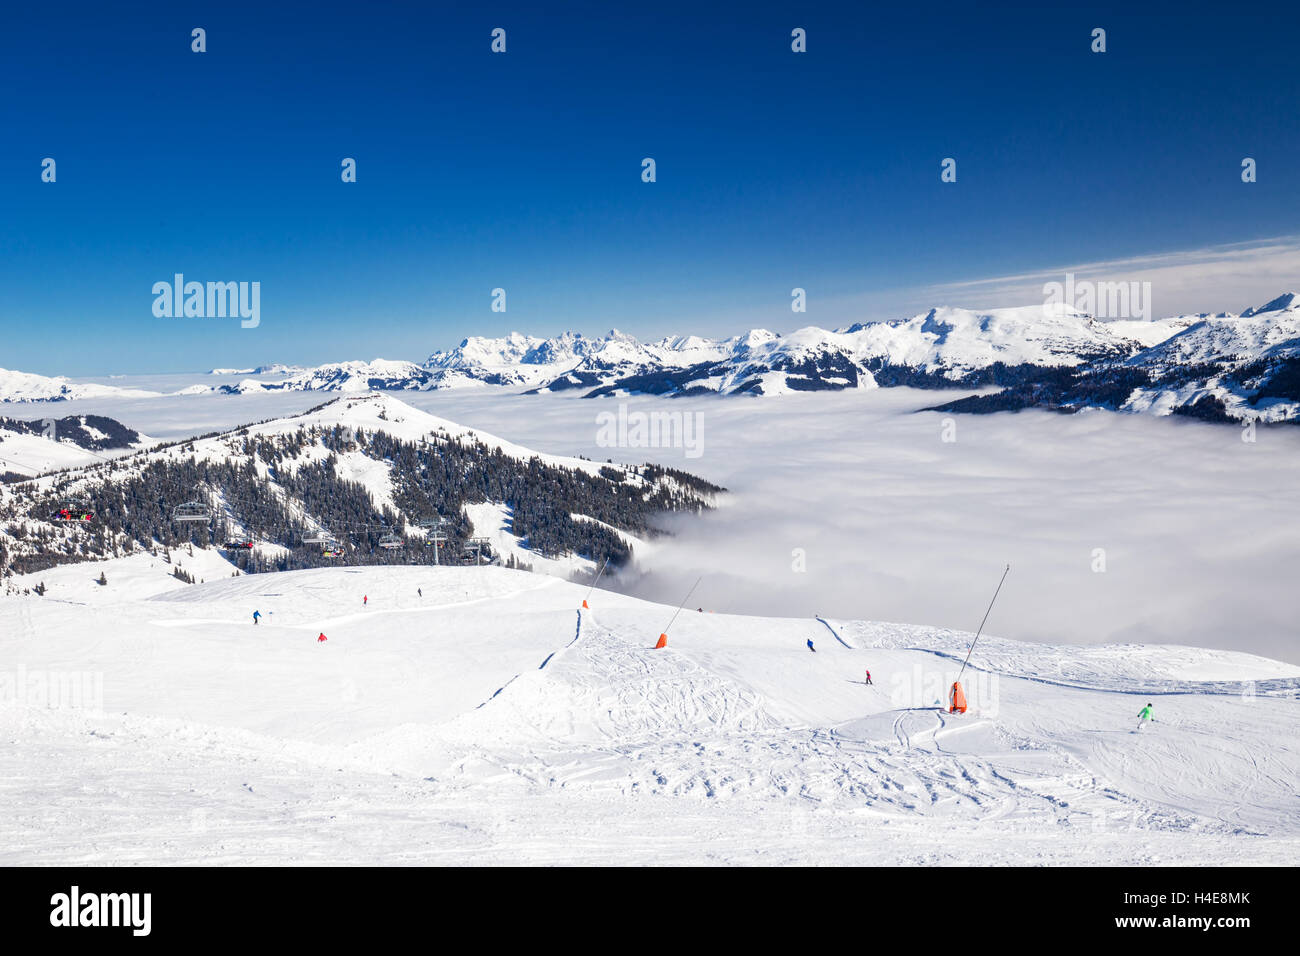 Tyrolian Alps and ski slopes in Kitzbuhel ski resort, Austria Stock Photo